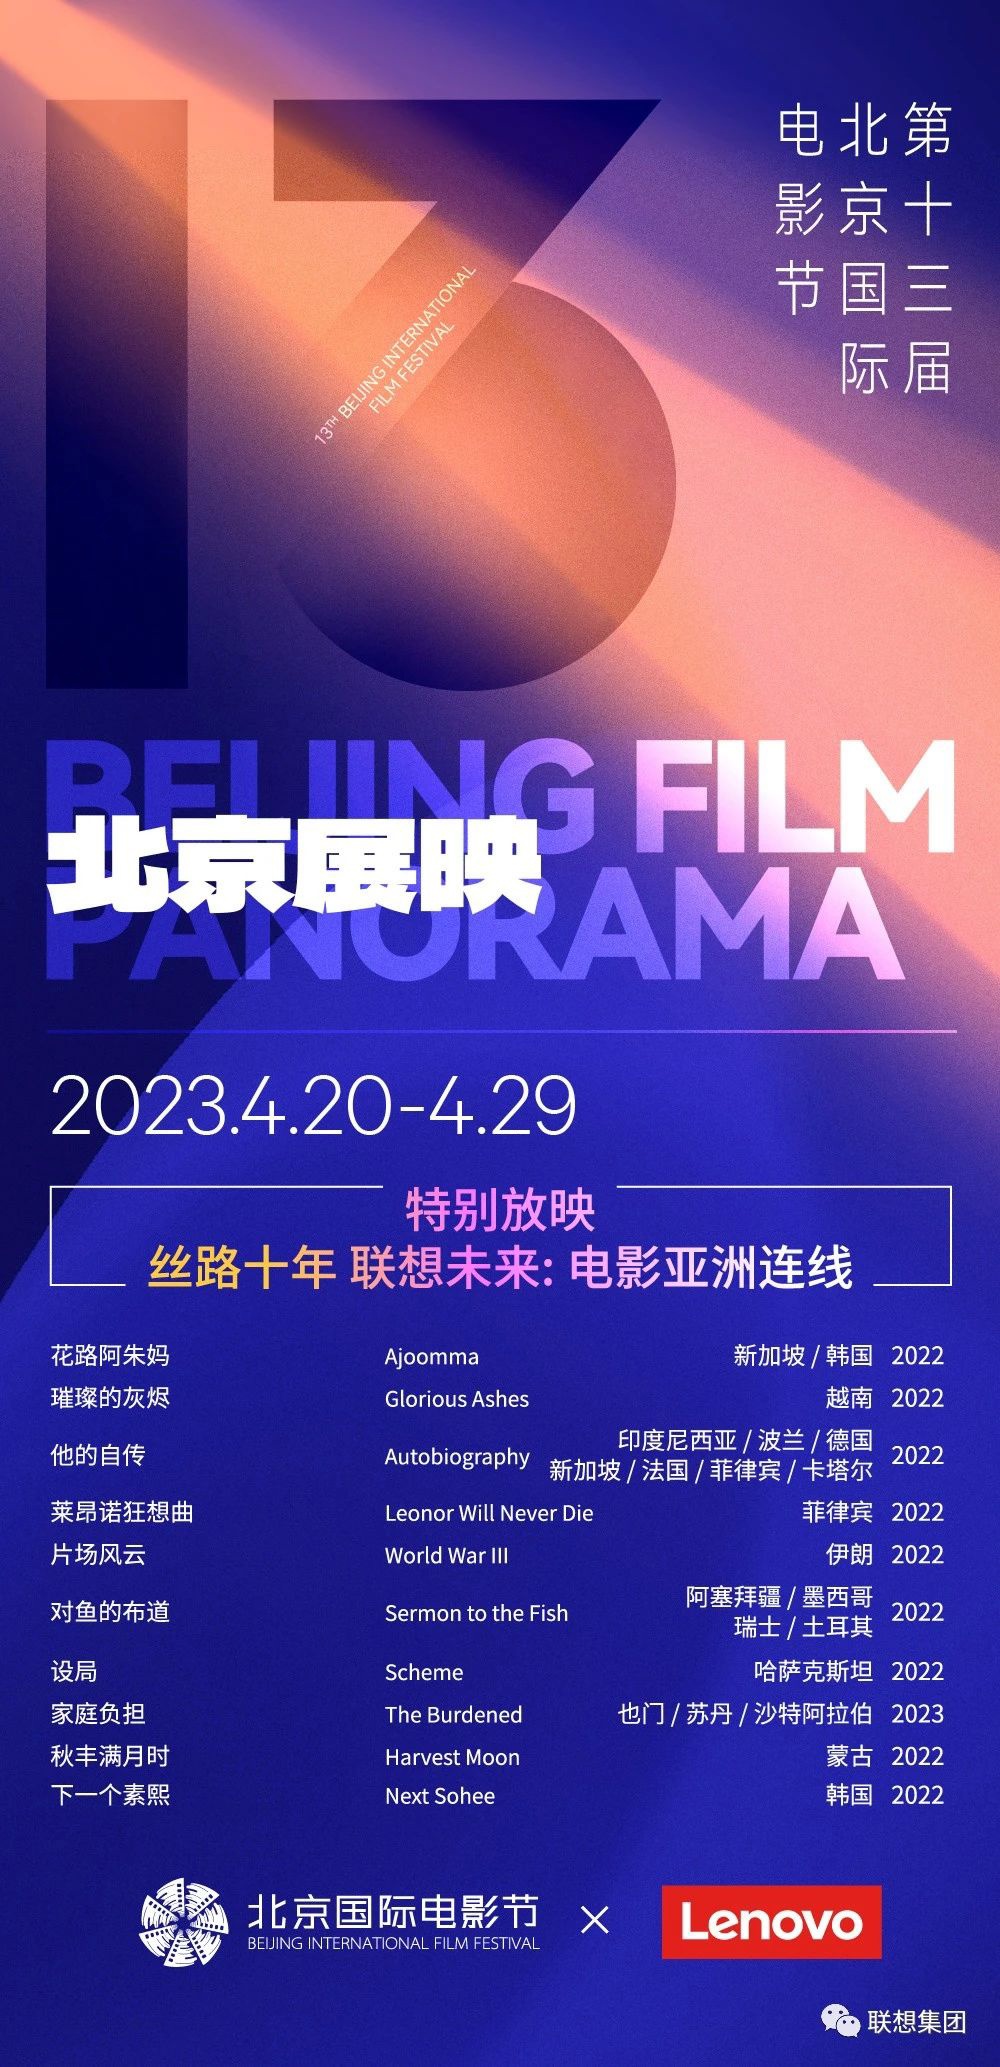 角子機：第十三屆北影節“北京展映”排片表公佈，精選 180 餘部作品、4 月 20 日-29 日放映